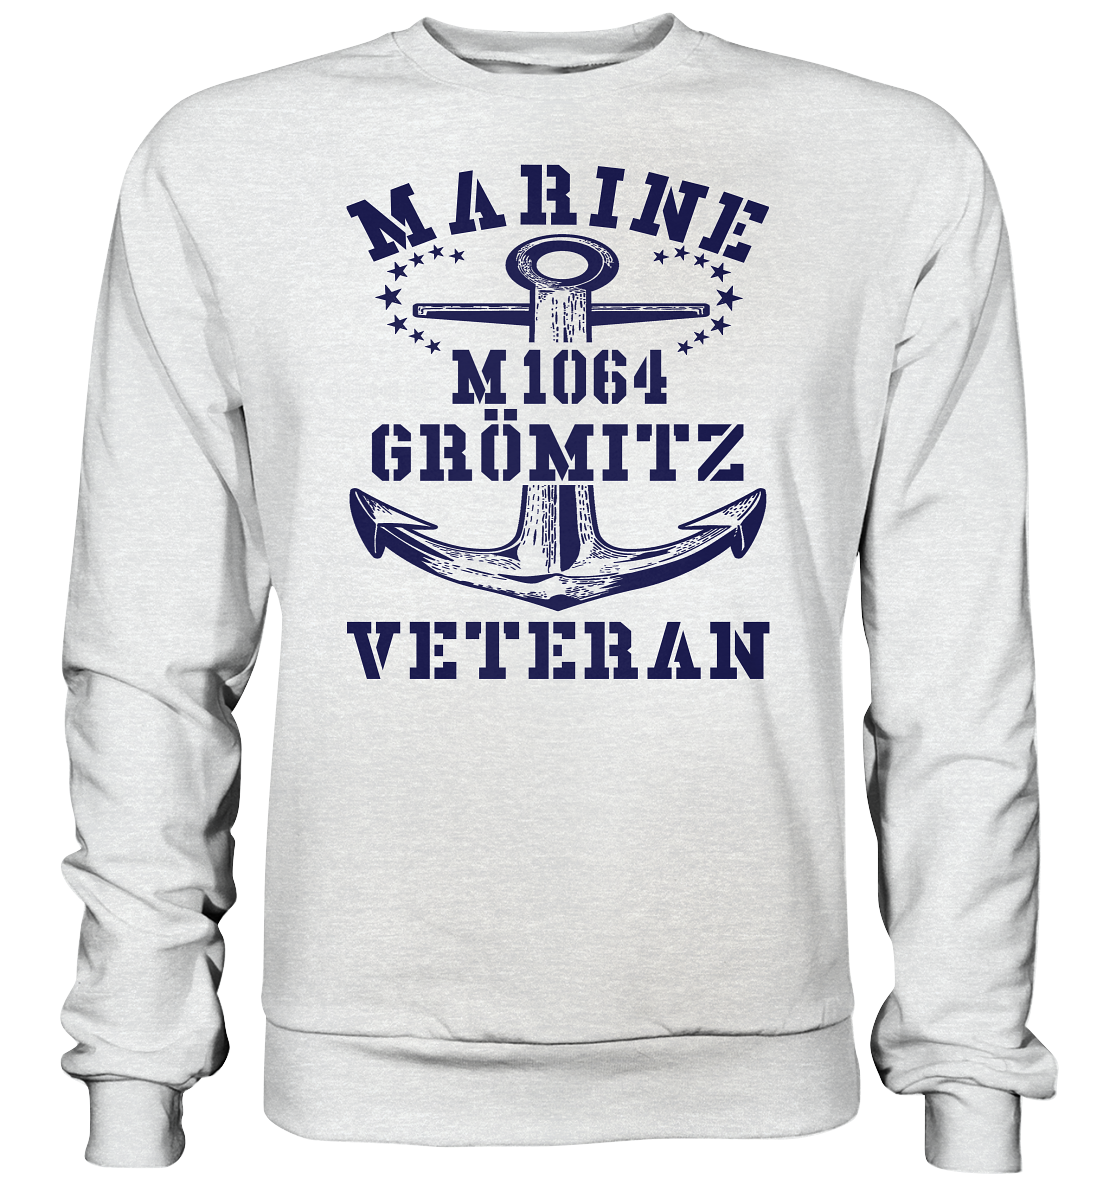 Mij.-Boot M1064 GRÖMITZ Marine Veteran - Premium Sweatshirt